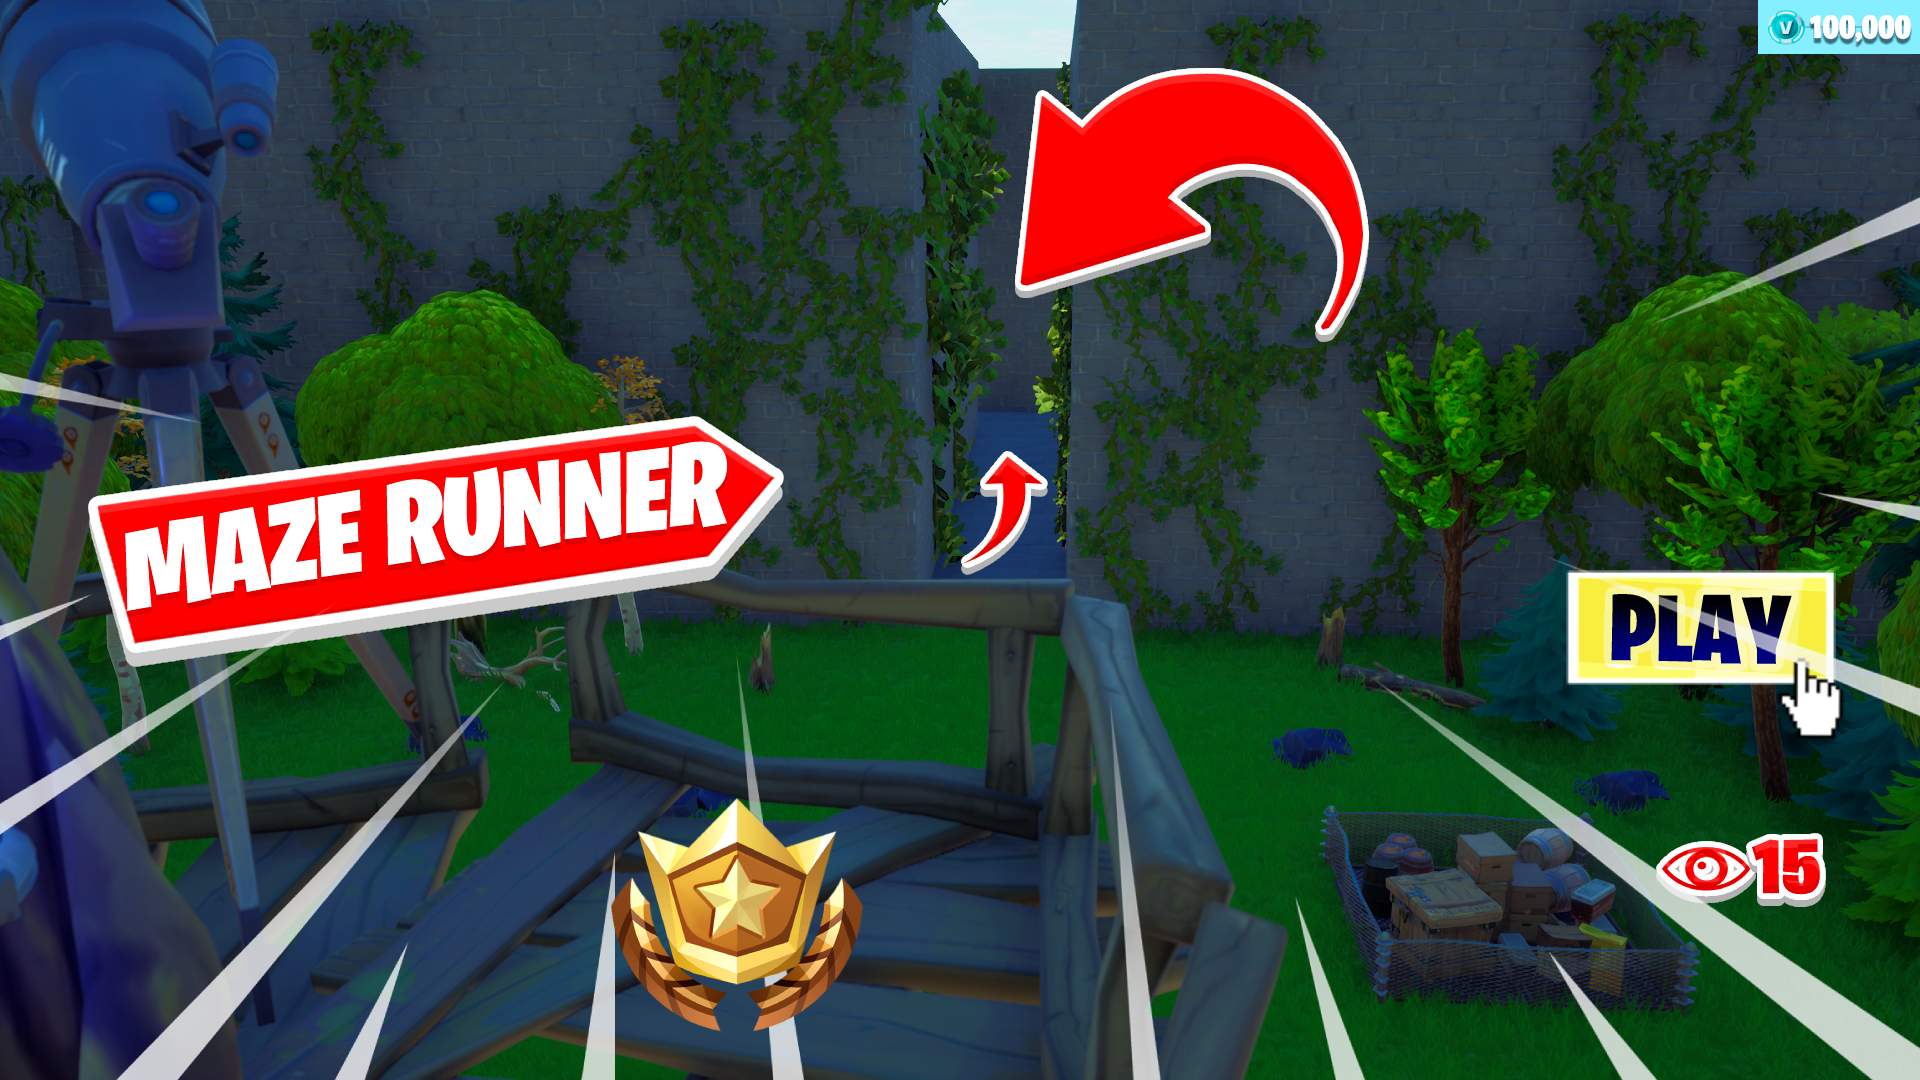 NEW* MAZE RUNNER Map In Fortnite! 